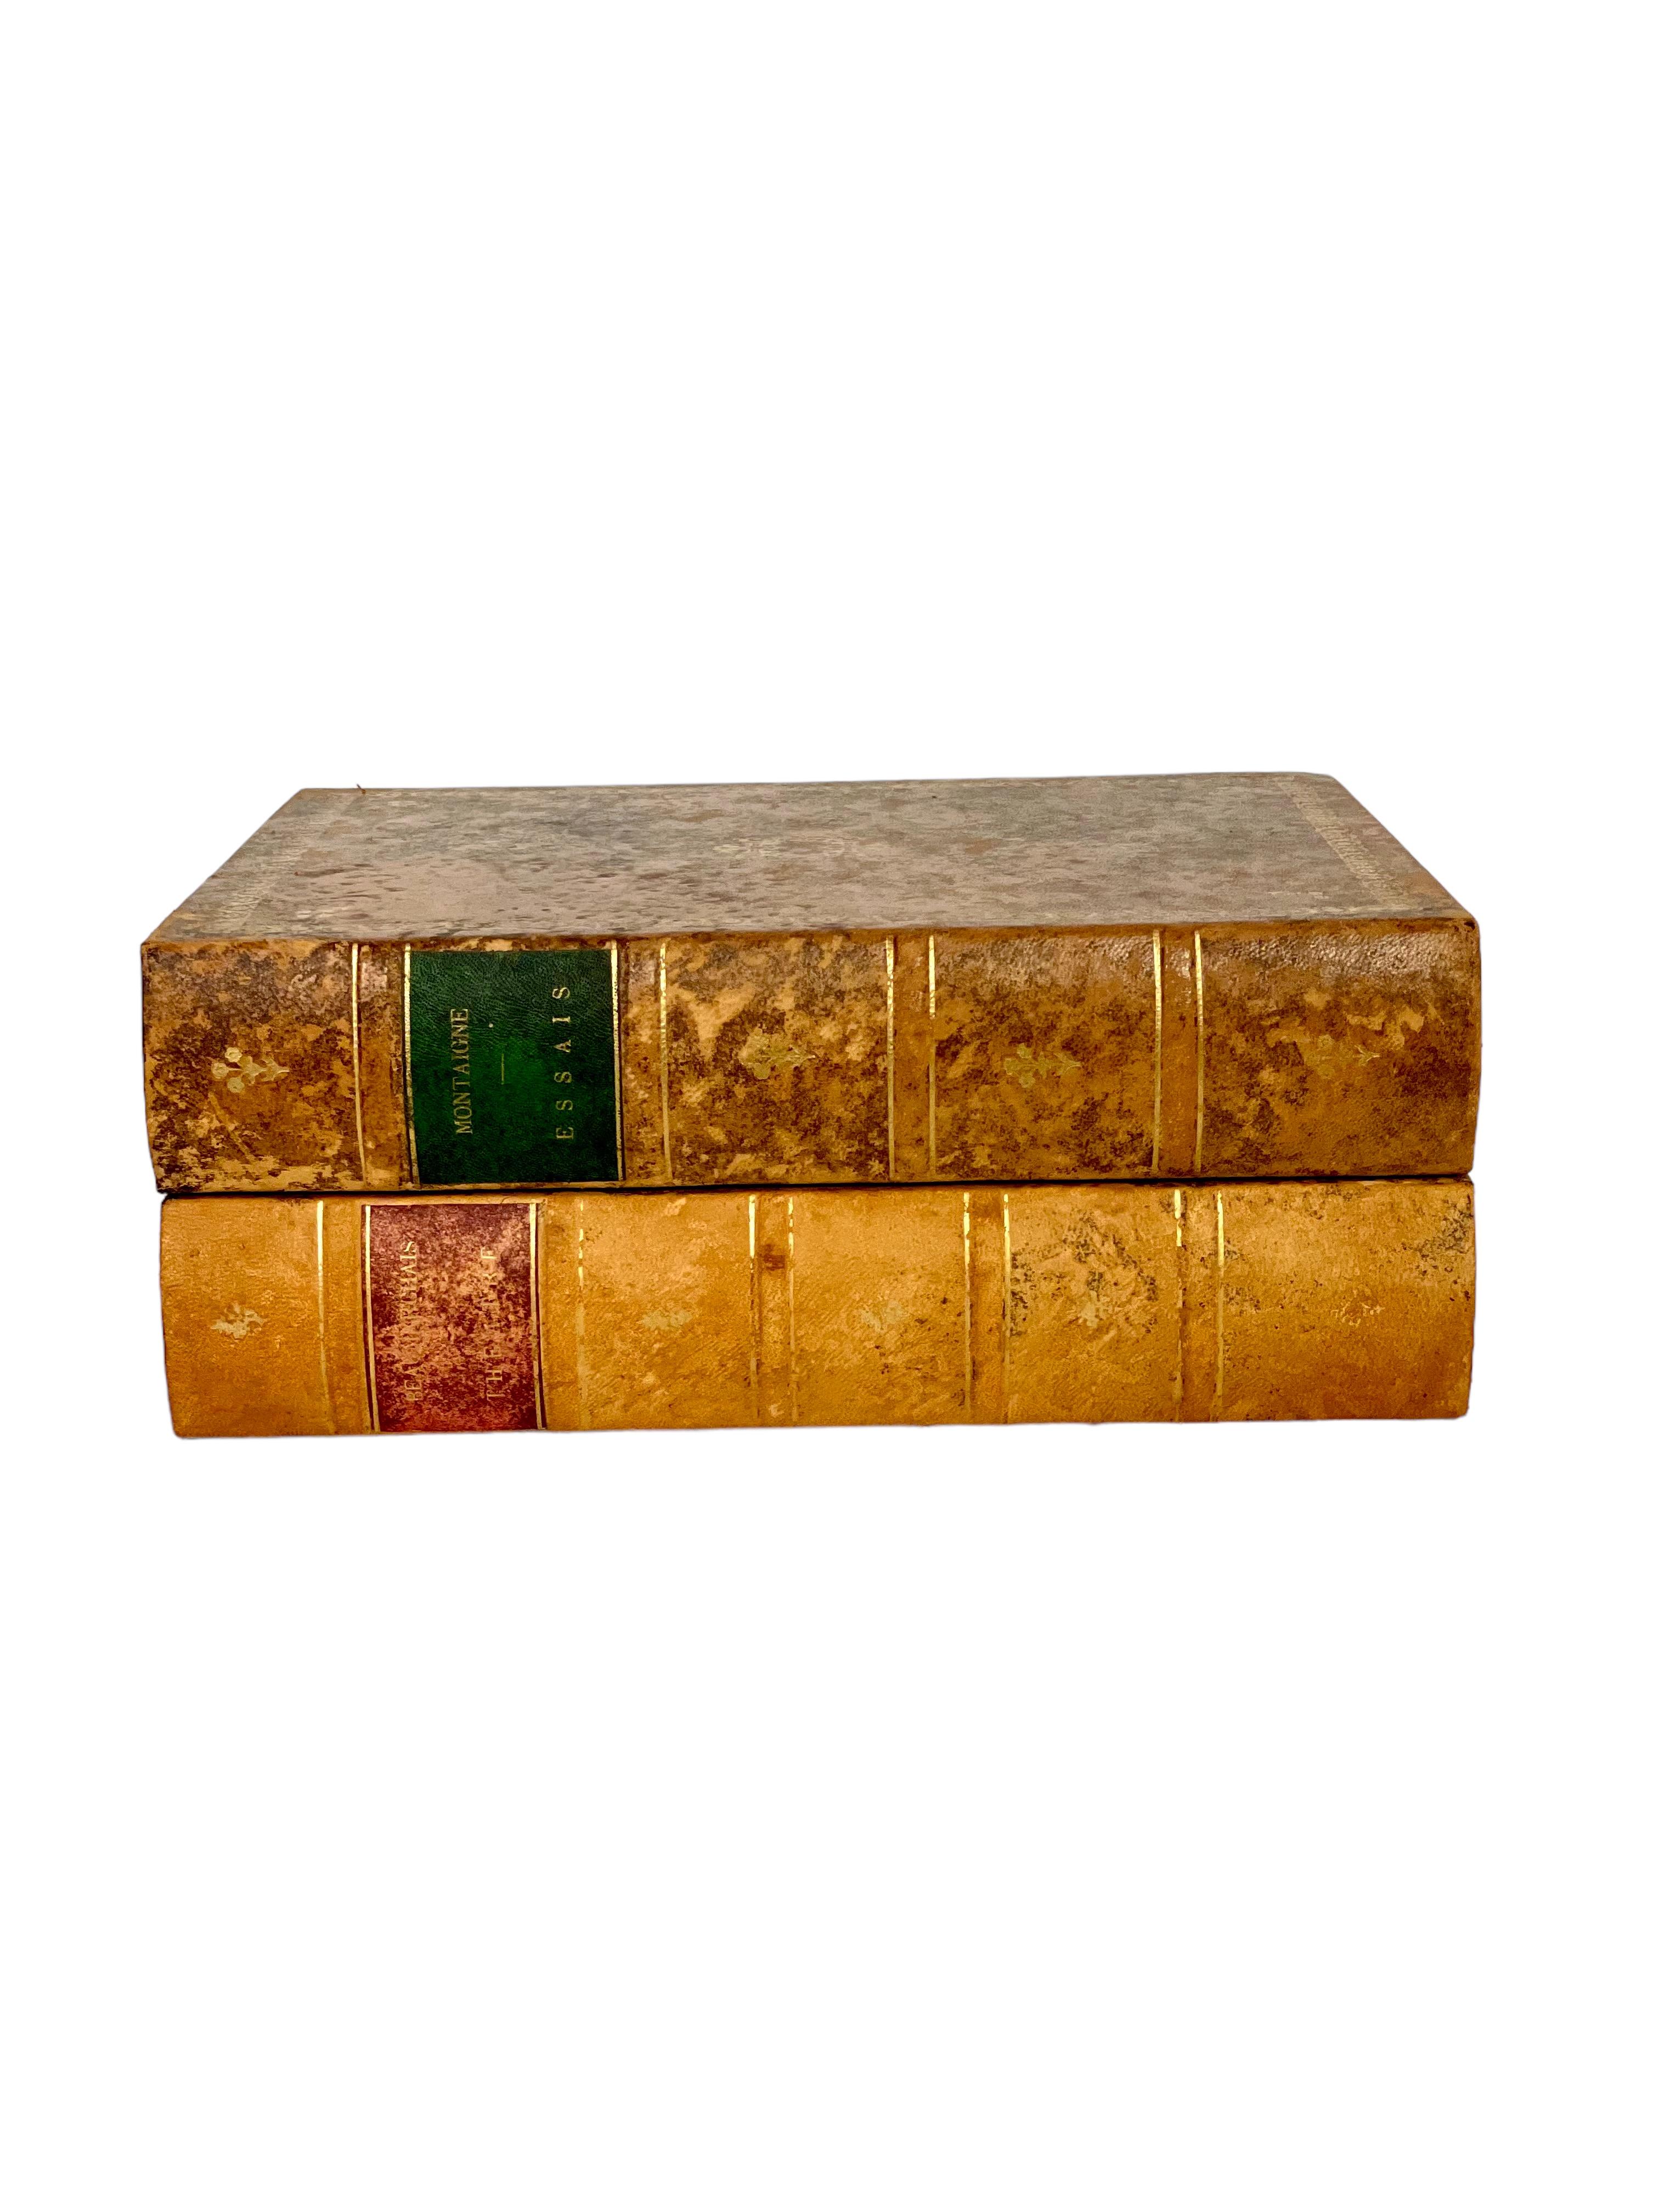 In diesem fabelhaften Lederetui mit Scharnieren, das wie ein Buch aussieht, verstecken sich heimlich sechs entzückende Whisky-Kristallbecher mit Tiermotiven. Der Deckel des Koffers, der aus zwei vergoldeten antiken Lederbüchern mit den Titeln